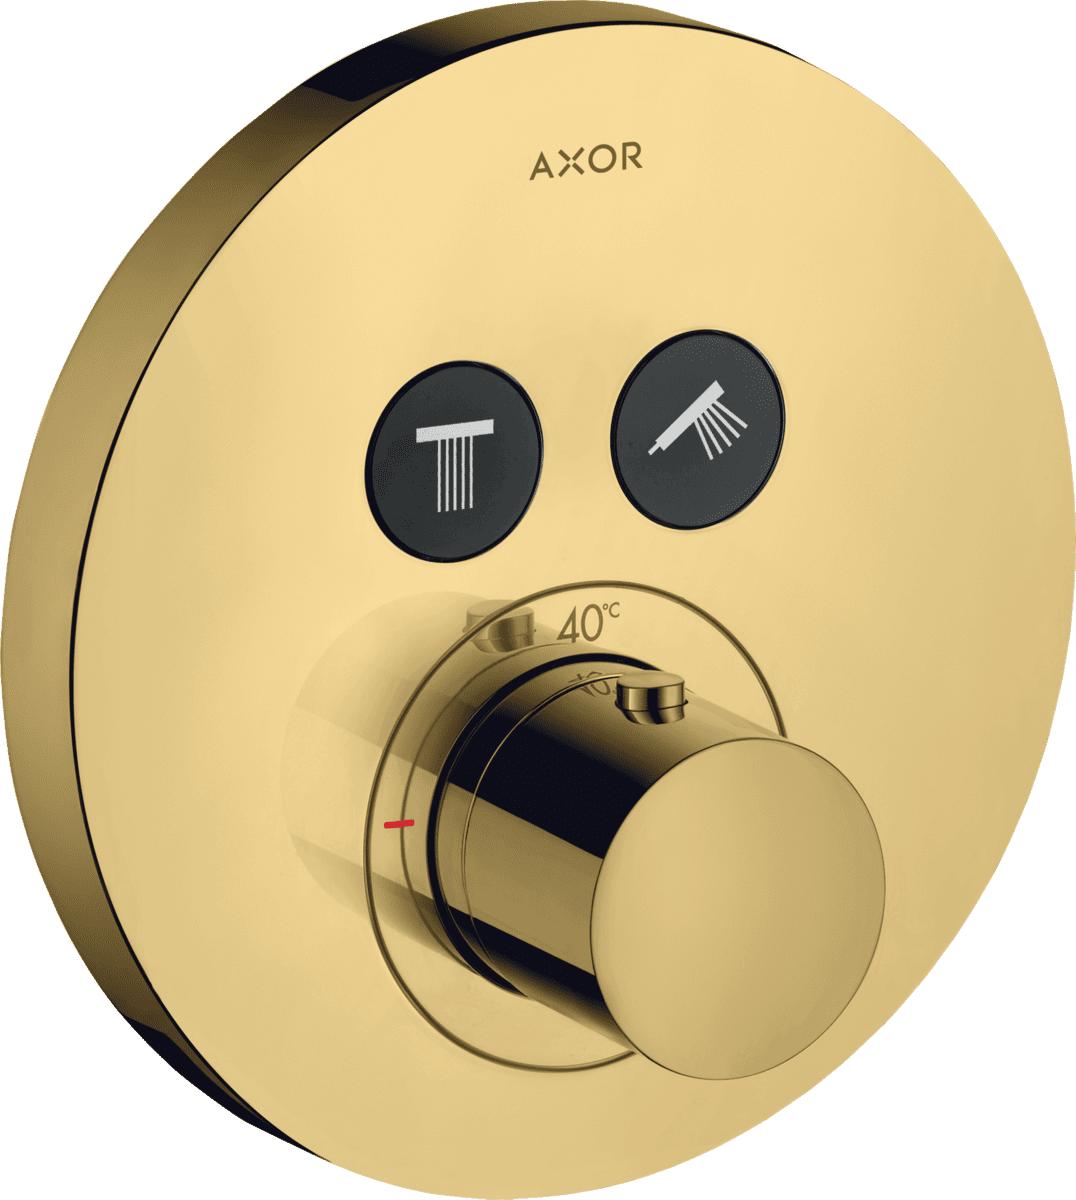 HANSGROHE AXOR ShowerSolutions Termostat ankastre montaj yuvarlak 2 çıkış için #36723990 - Parlak Altın Optik resmi